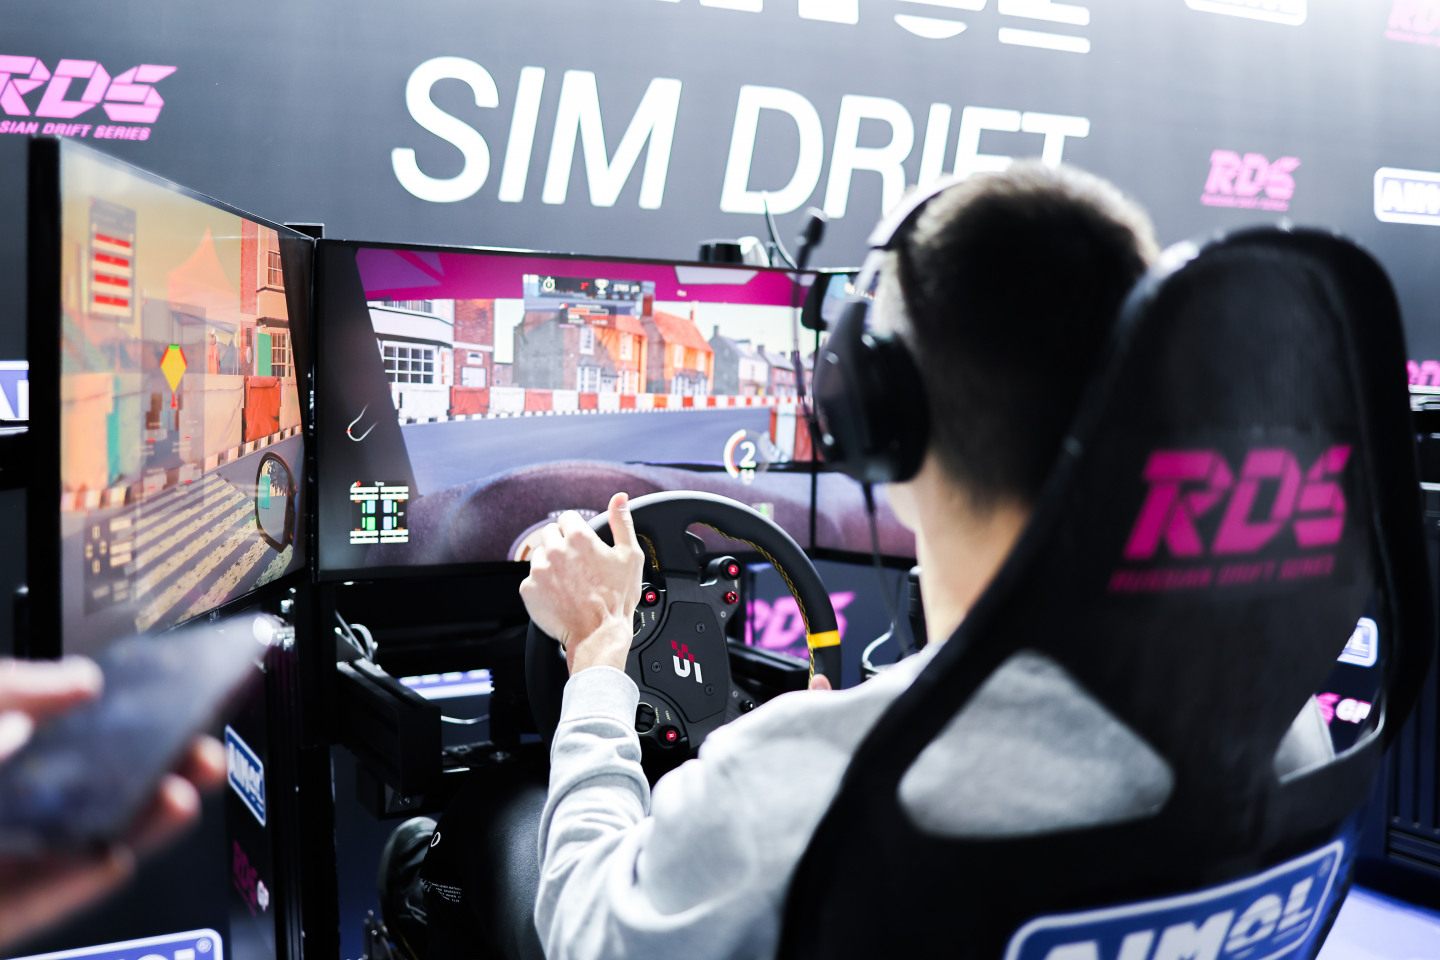 В соревнованиях AIMOL SIM DRIFT приняли участие более 30 человек, среди которых были как профессиональные пилоты, так и любители, впервые севшие за руль симулятора © RDS